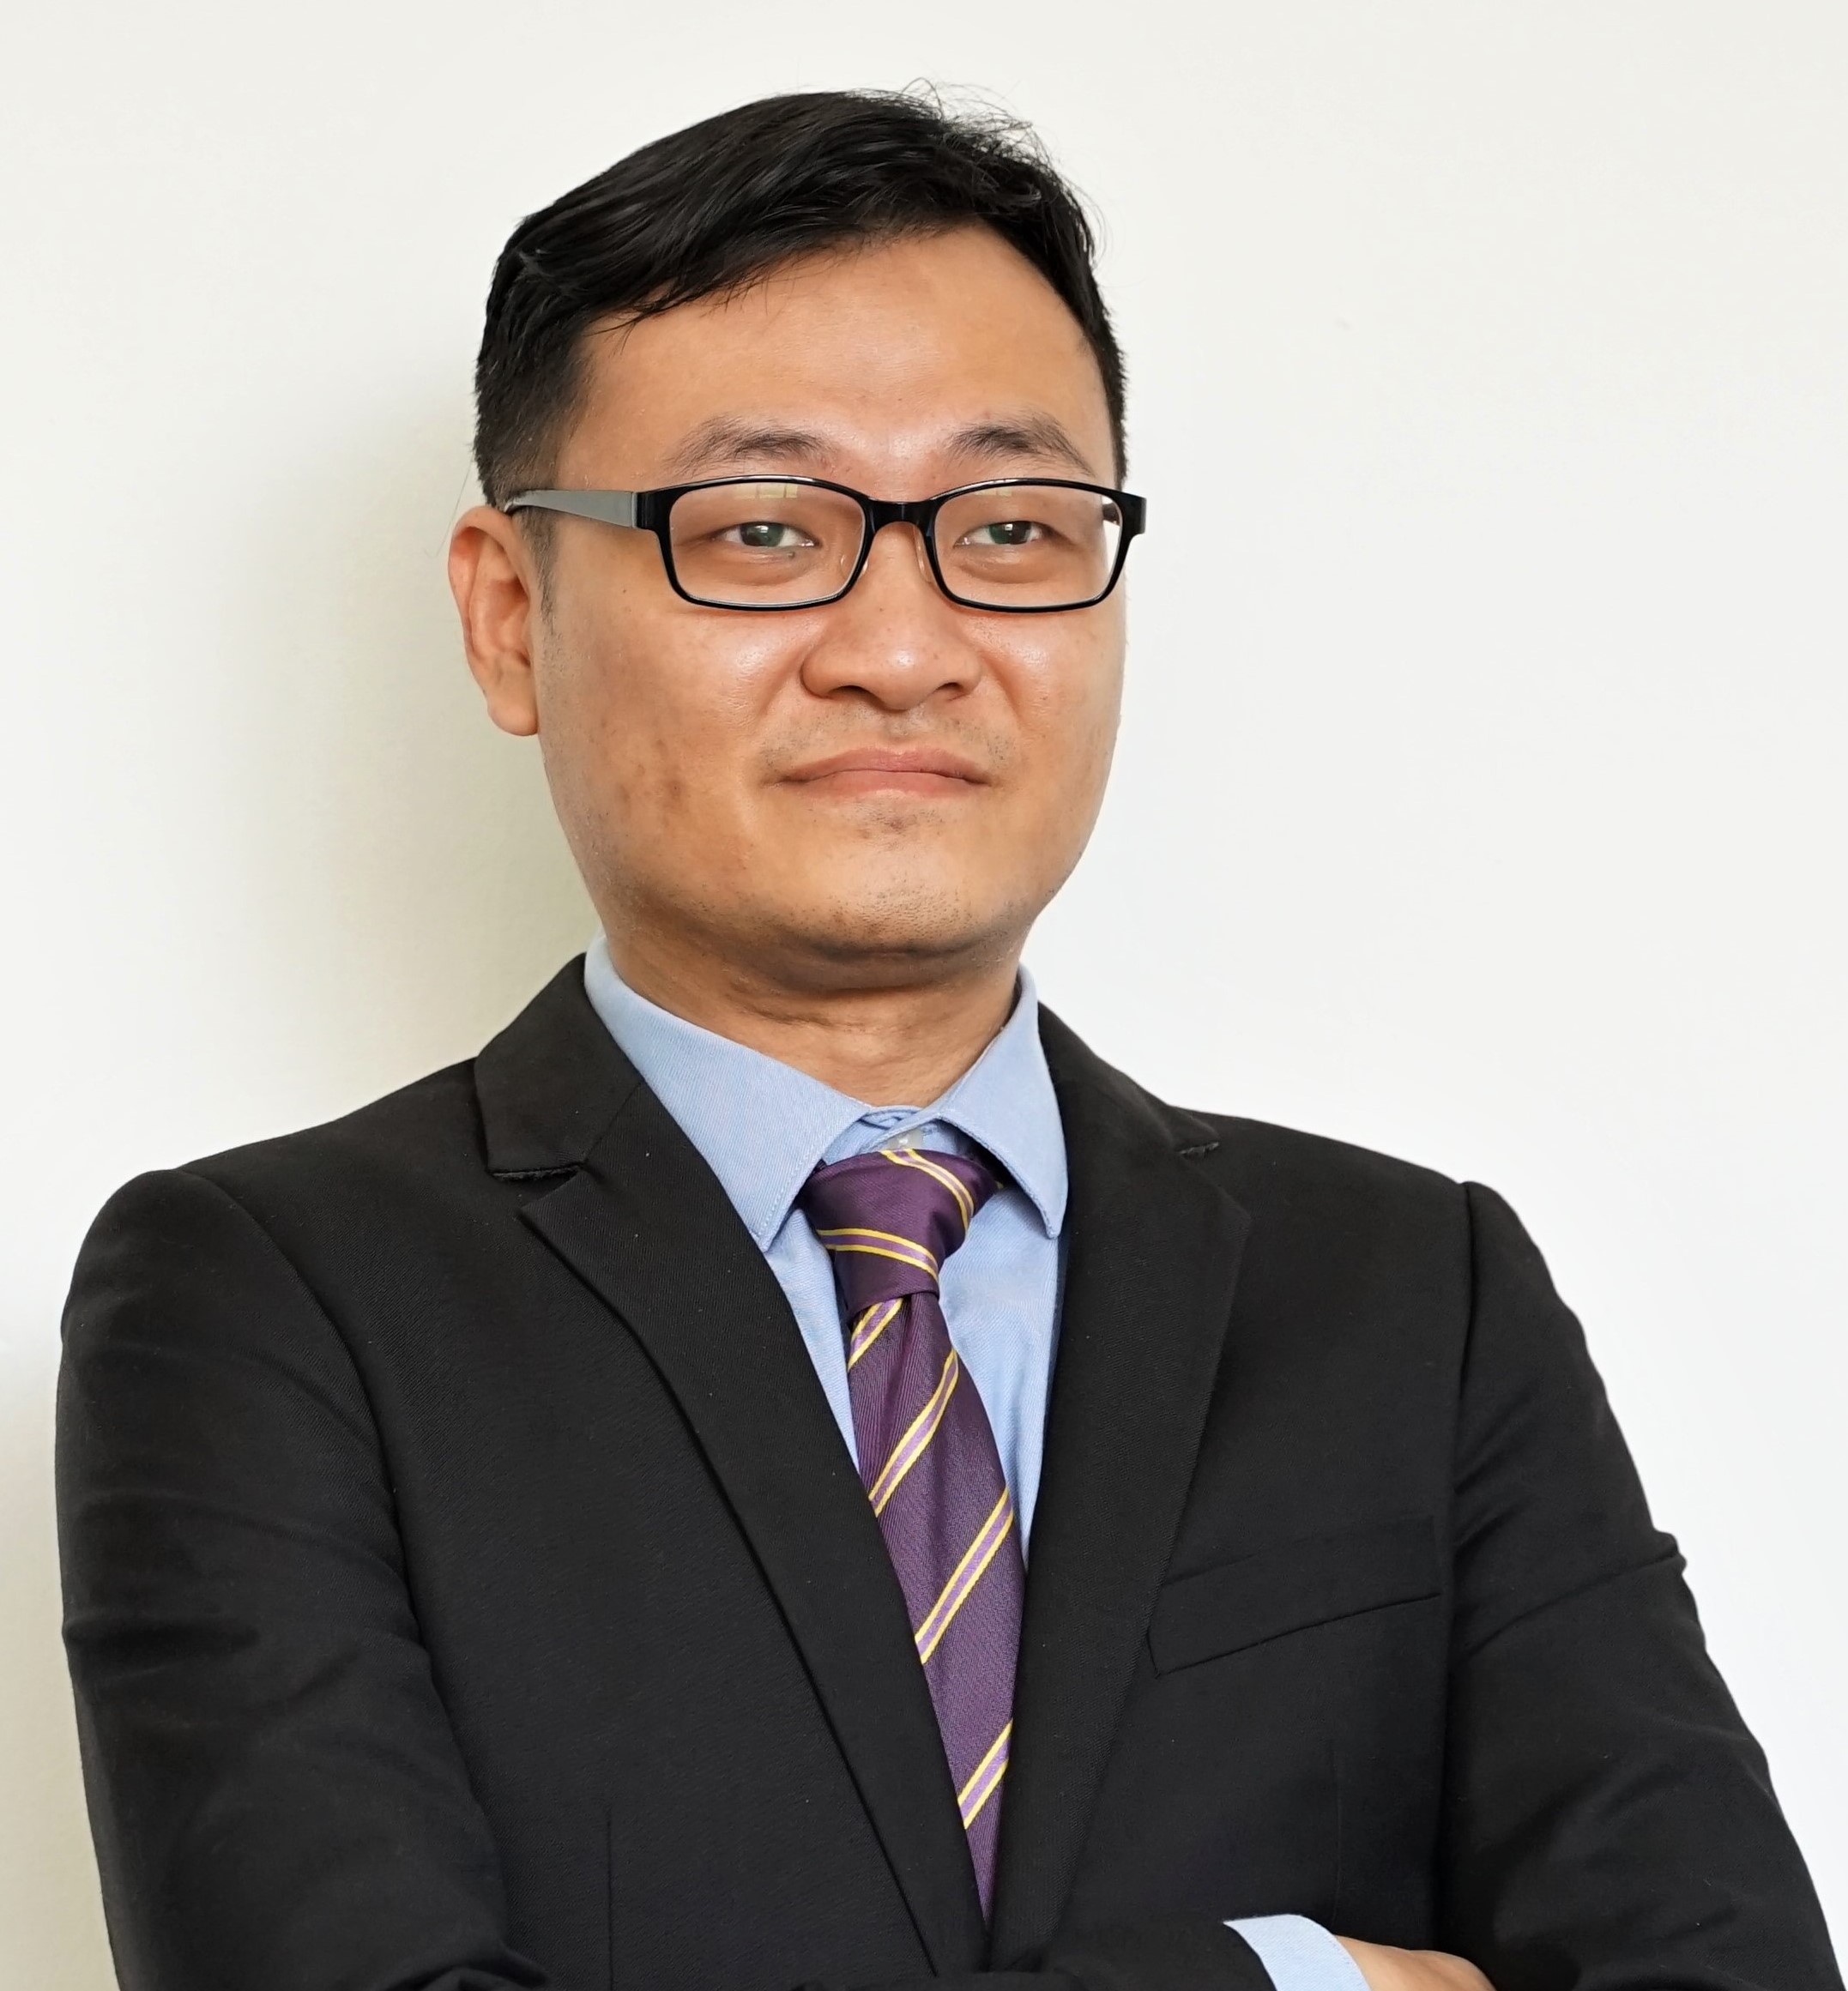 Dr. Tan Joo Shun